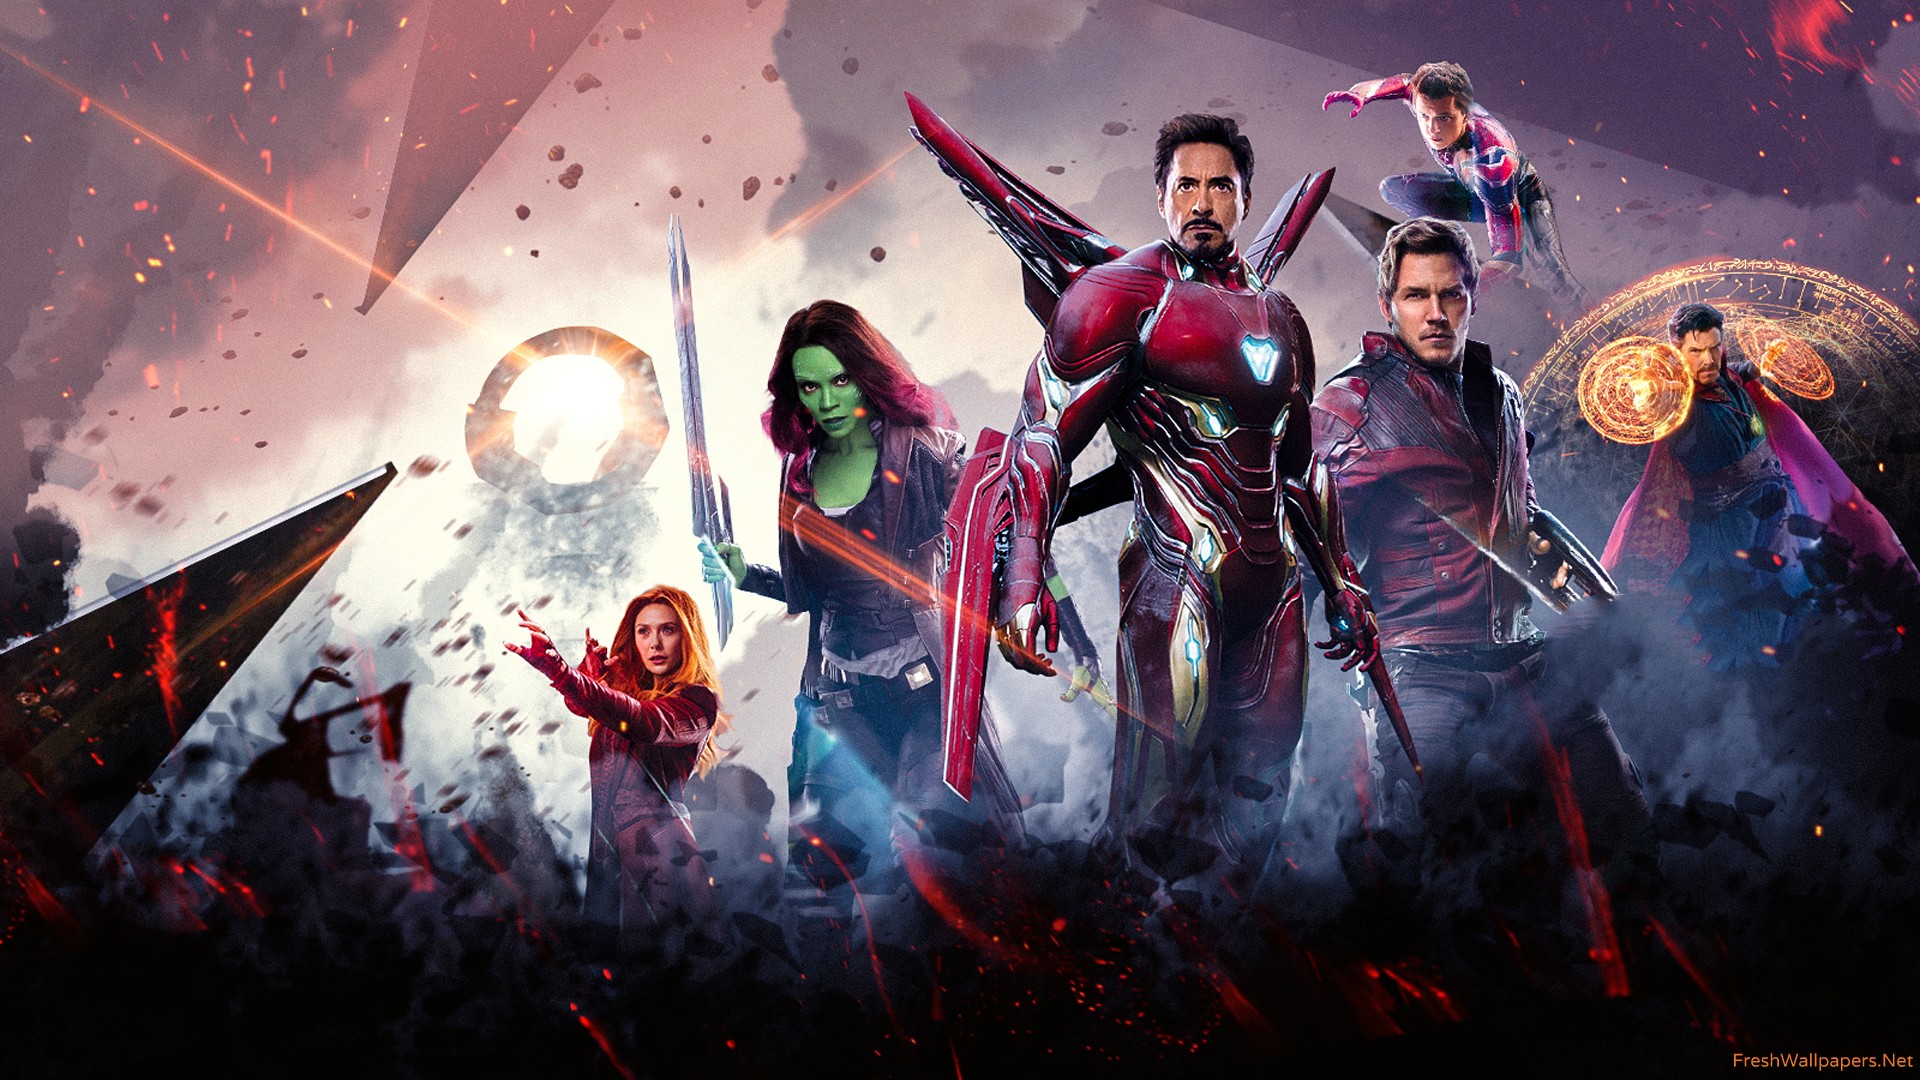 Avengers Infinity War Poster Wallpaper Freshwallpaper